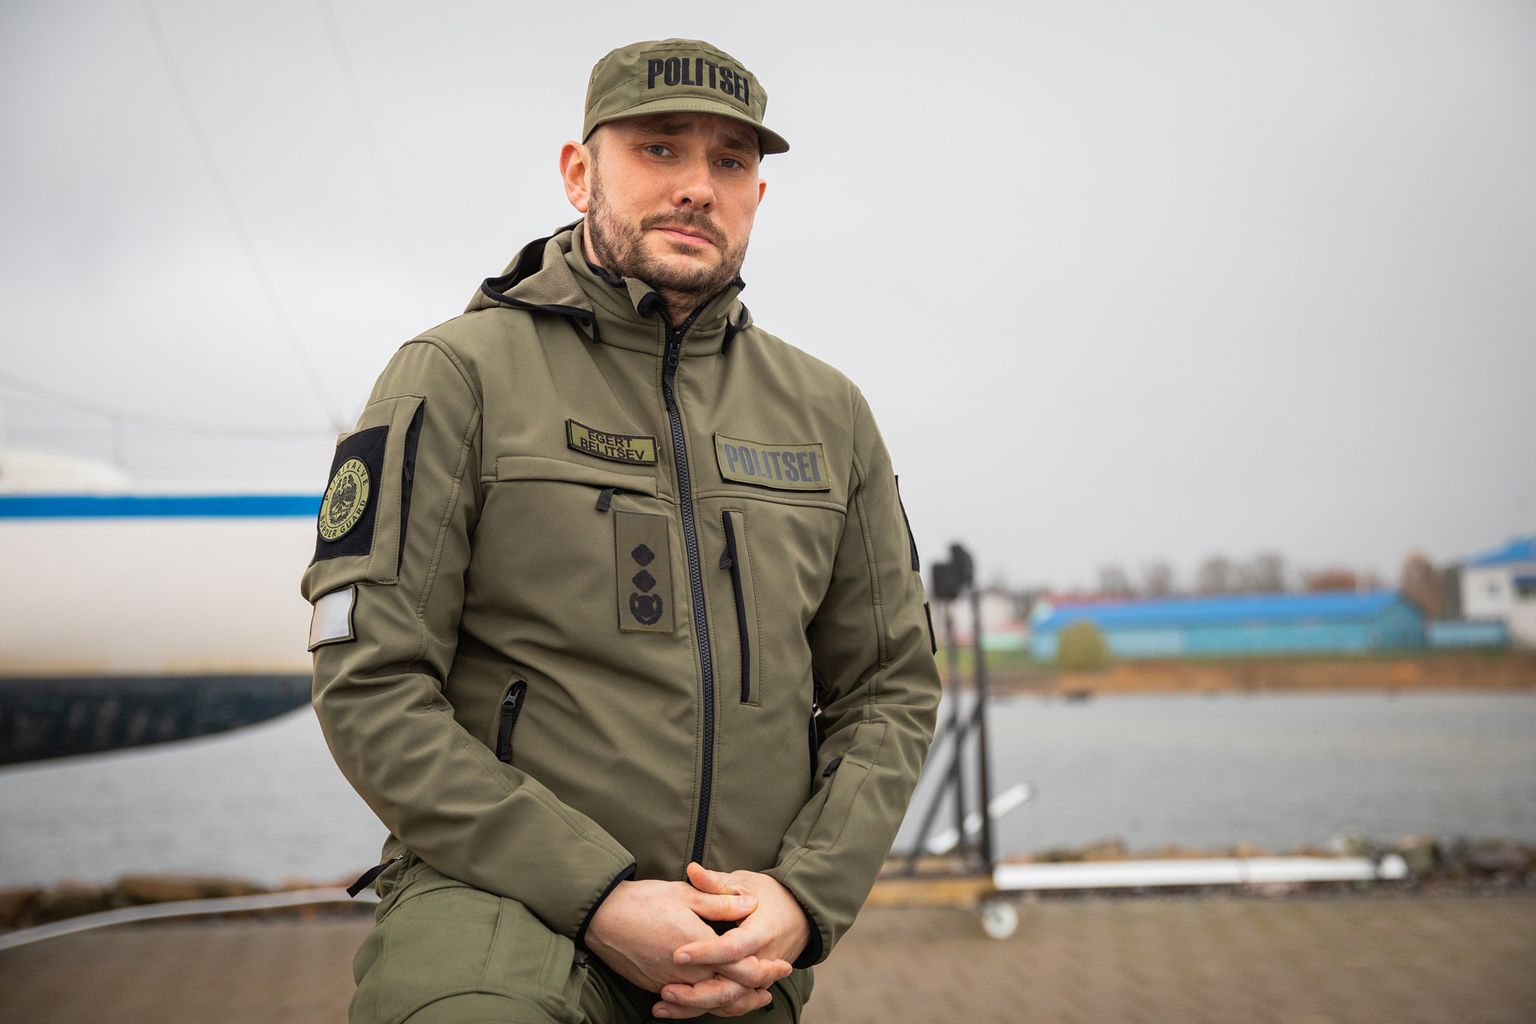 PIIRIVALVEJUHT: Egert Belitšev on üle aastate taas ametnik, kellest rääkides saab kasutada nimetust "piirivalvejuht".